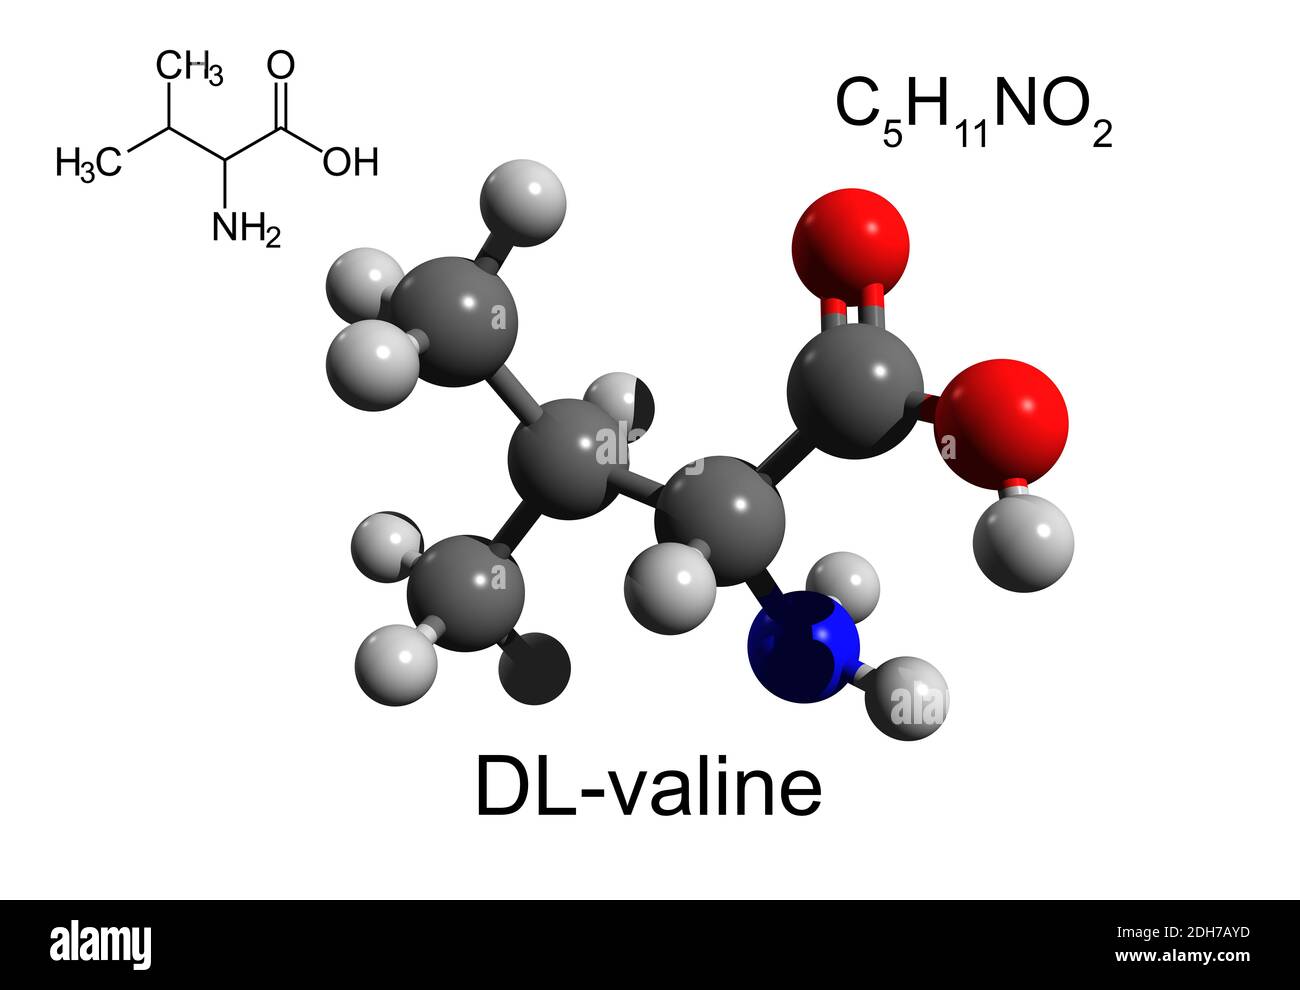 Chemische Formel, Strukturformel und 3D-Ball-and-Stick-Modell von DL-Valin, einer essentiellen Aminosäure, weißer Hintergrund Stockfoto